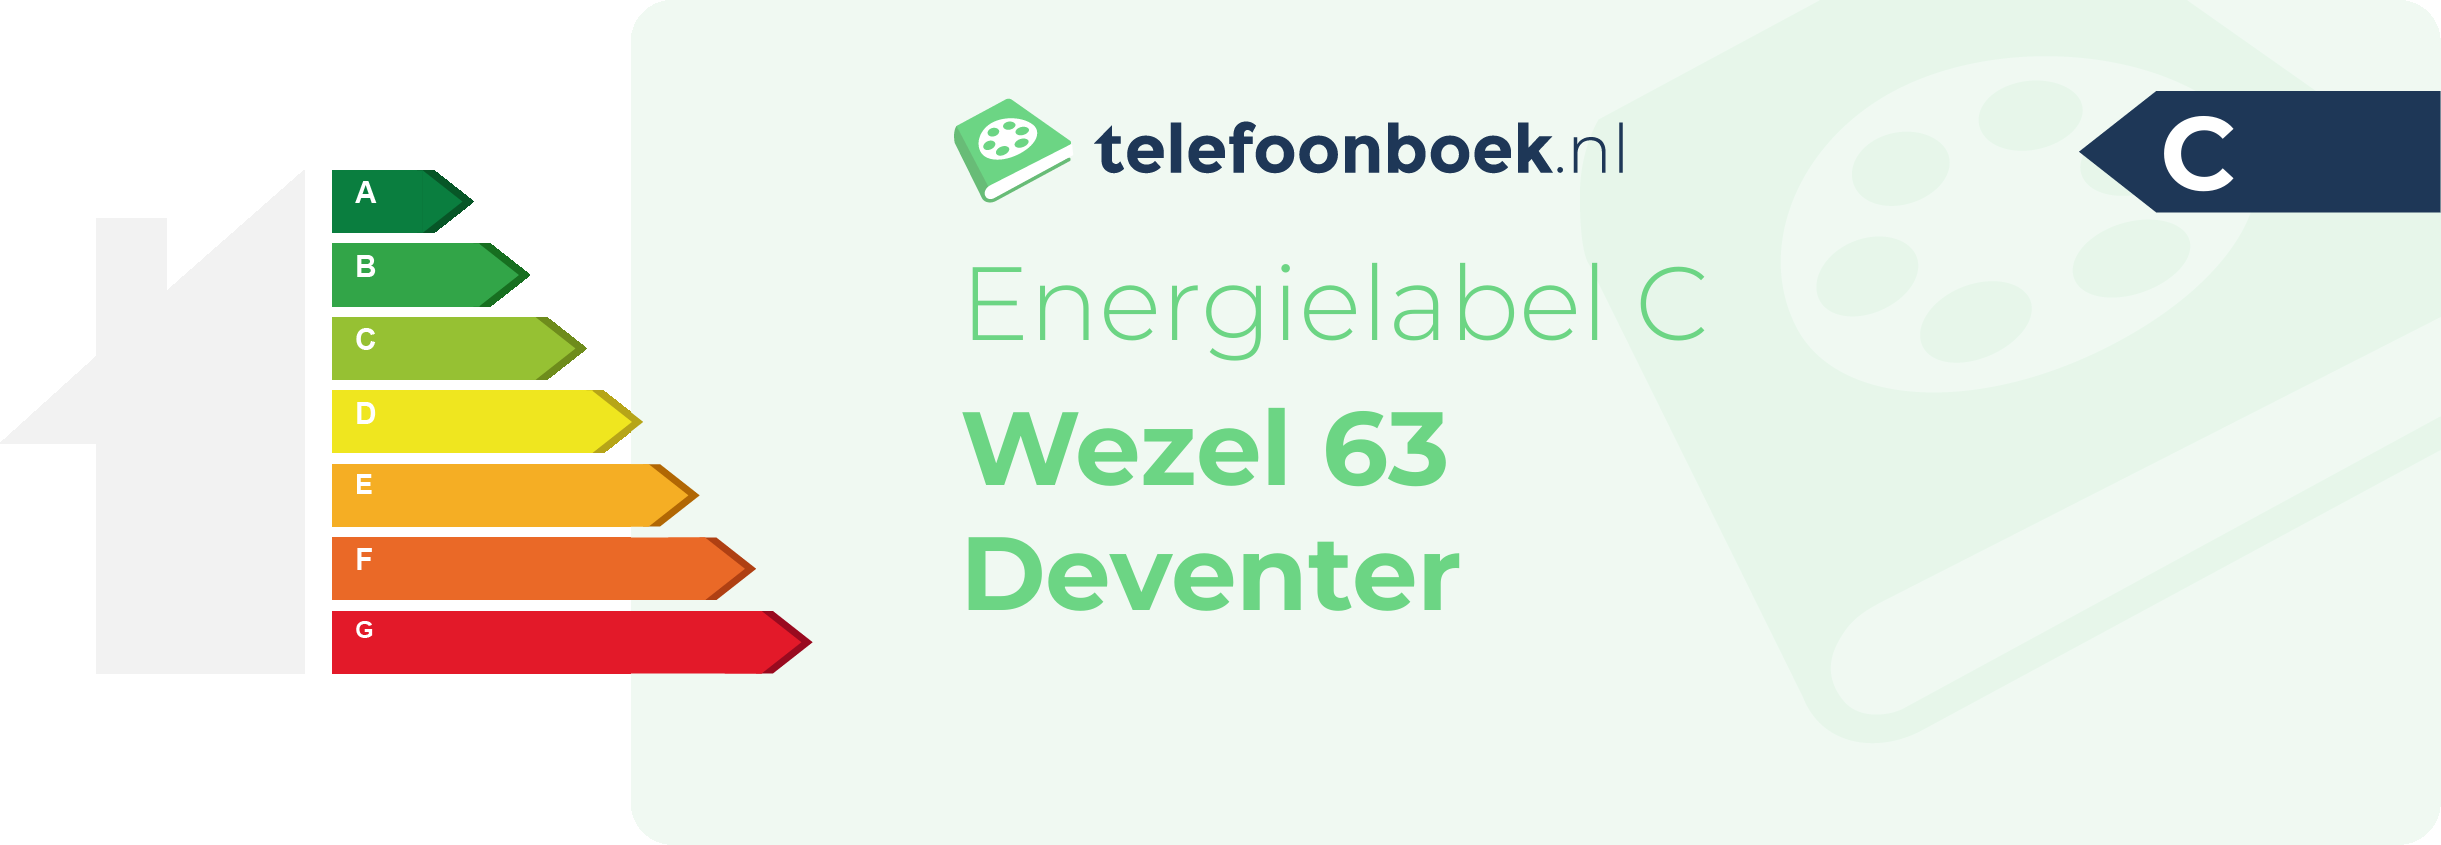 Energielabel Wezel 63 Deventer